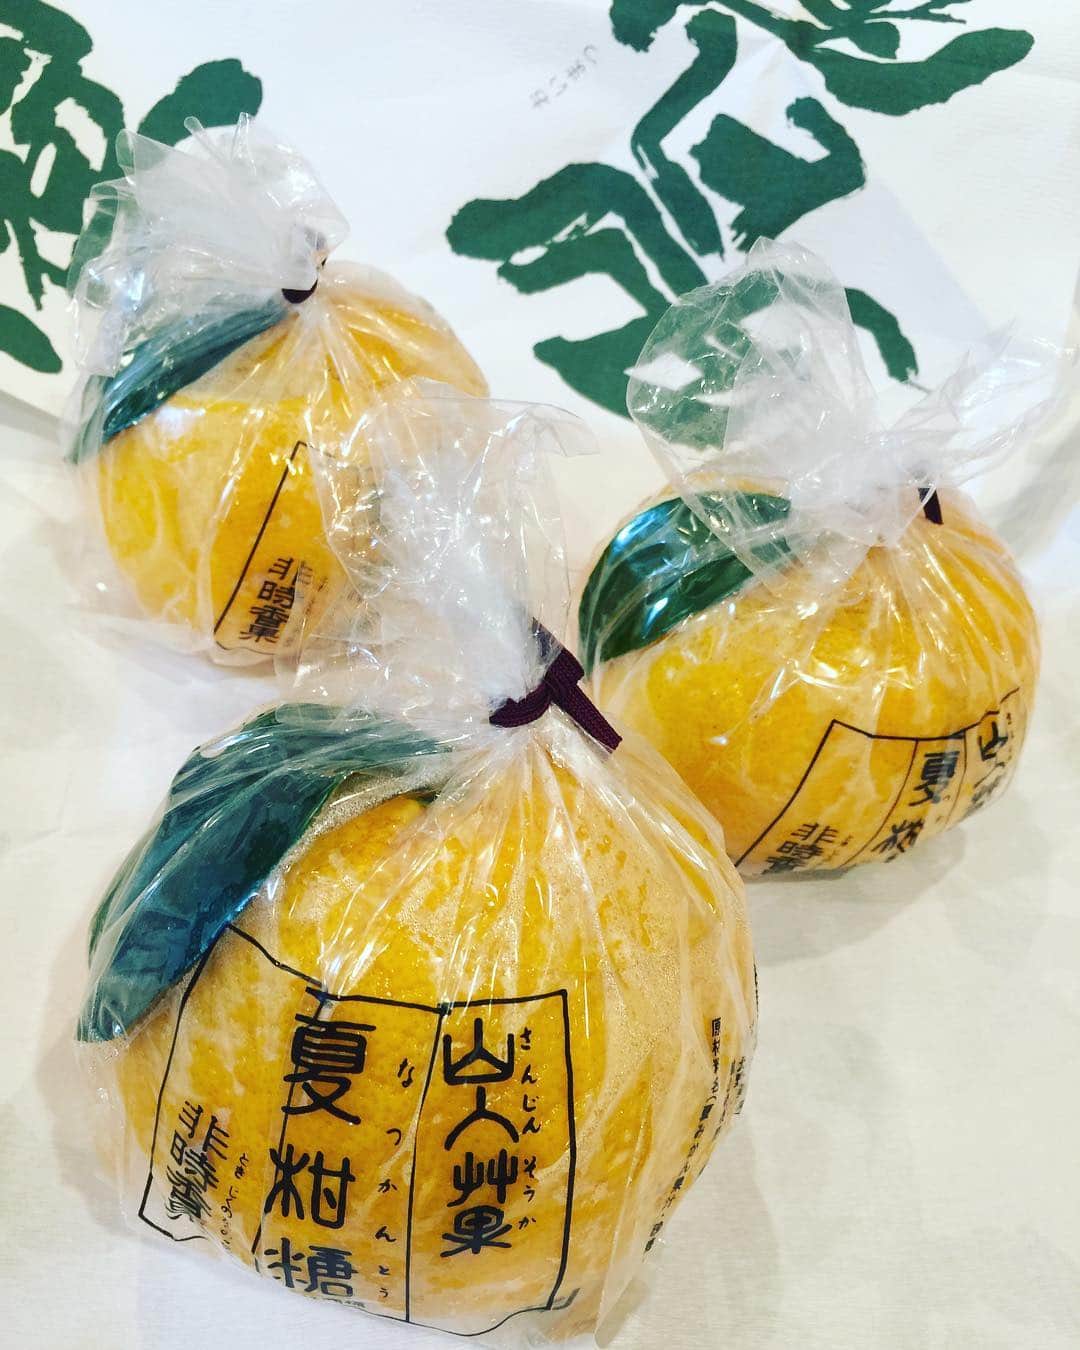 掛貝梨紗のインスタグラム：「暑い夏は、老松のさっぱり夏みかんゼリーがオススメです♡ 果汁と寒天のみ！大き過ぎて、1人じゃ多め🙄💓 This Orange jelly is limited edition during this season in Kyoto, Japan. It’s made only with fresh orange juice and agar agar powder. So good👍 #夏みかん #夏柑糖 #なつかんとう #京都 #夏菓子 #老松 #おいまつ #和菓子 #京菓子 #寒天 #スイーツ #さっぱりスイーツ #期間限定 #orangejelly #kyoto #oimatsu #kyotosweets #japanesesweets #jelly #agaragar #agar #japaneseorange #limitededition #freshorangejuice #freshorange #summer #japanesesummer」